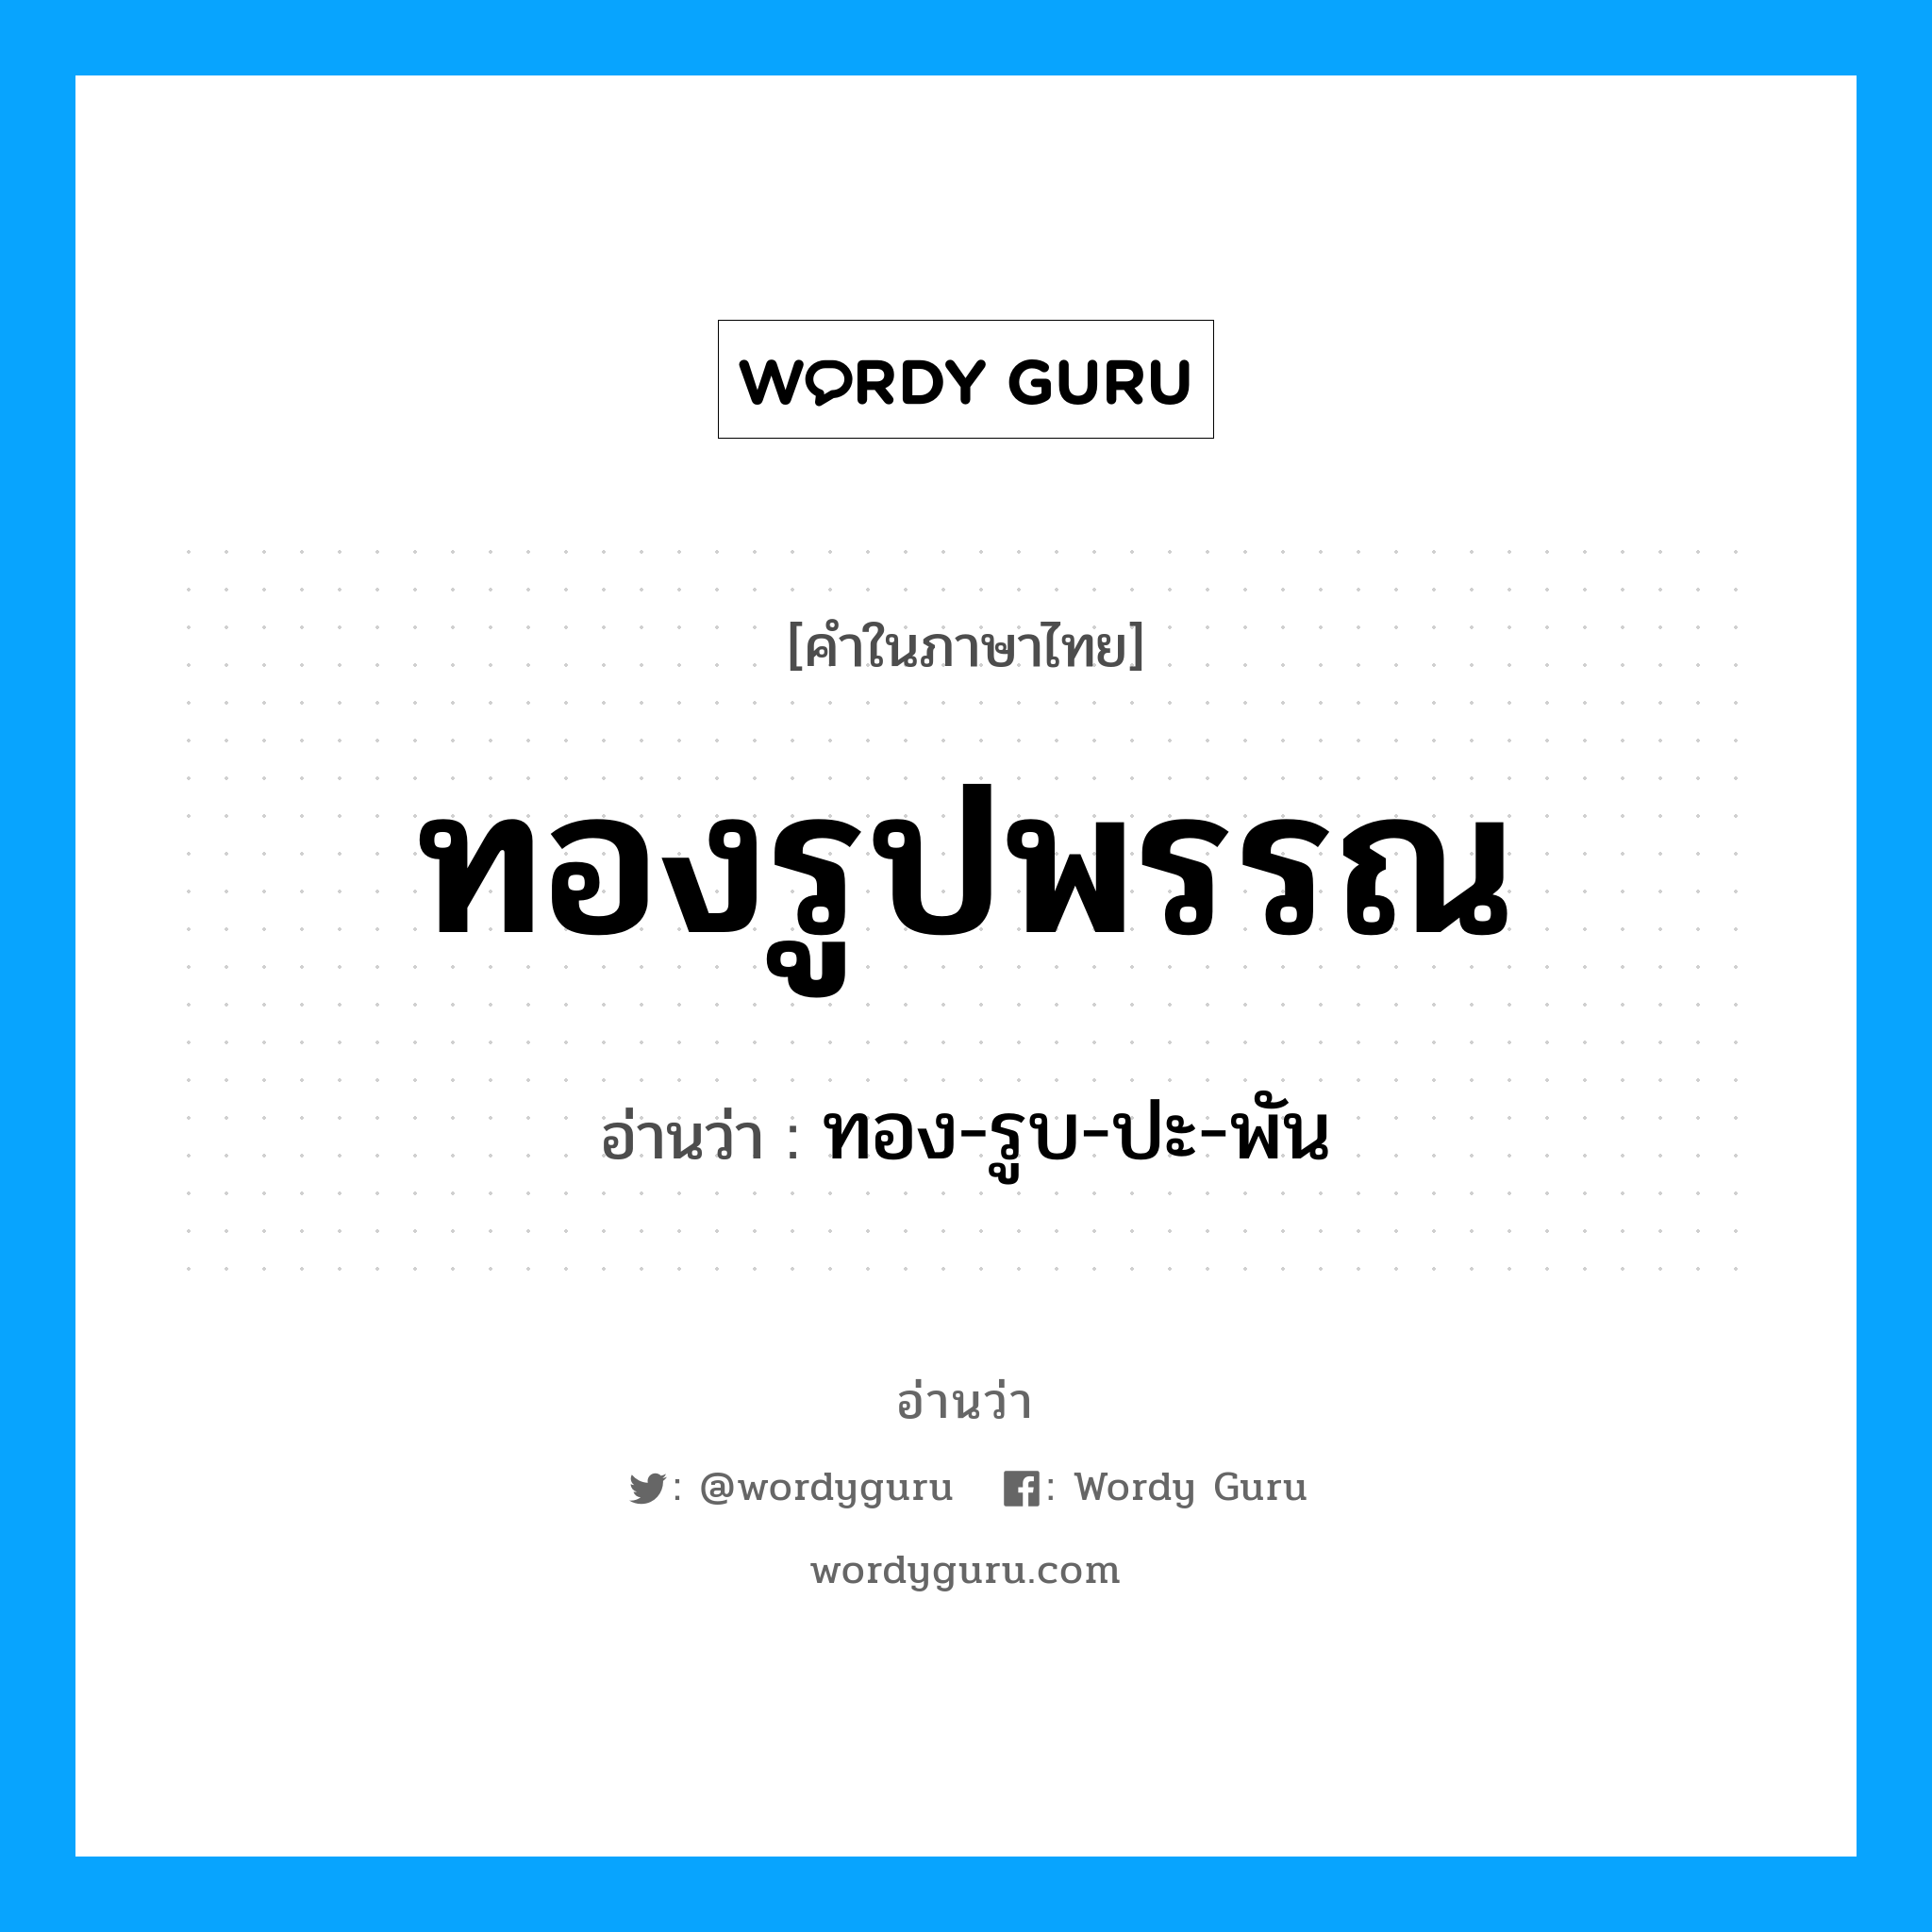 ทอง-รูบ-ปะ-พัน เป็นคำอ่านของคำไหน?, คำในภาษาไทย ทอง-รูบ-ปะ-พัน อ่านว่า ทองรูปพรรณ